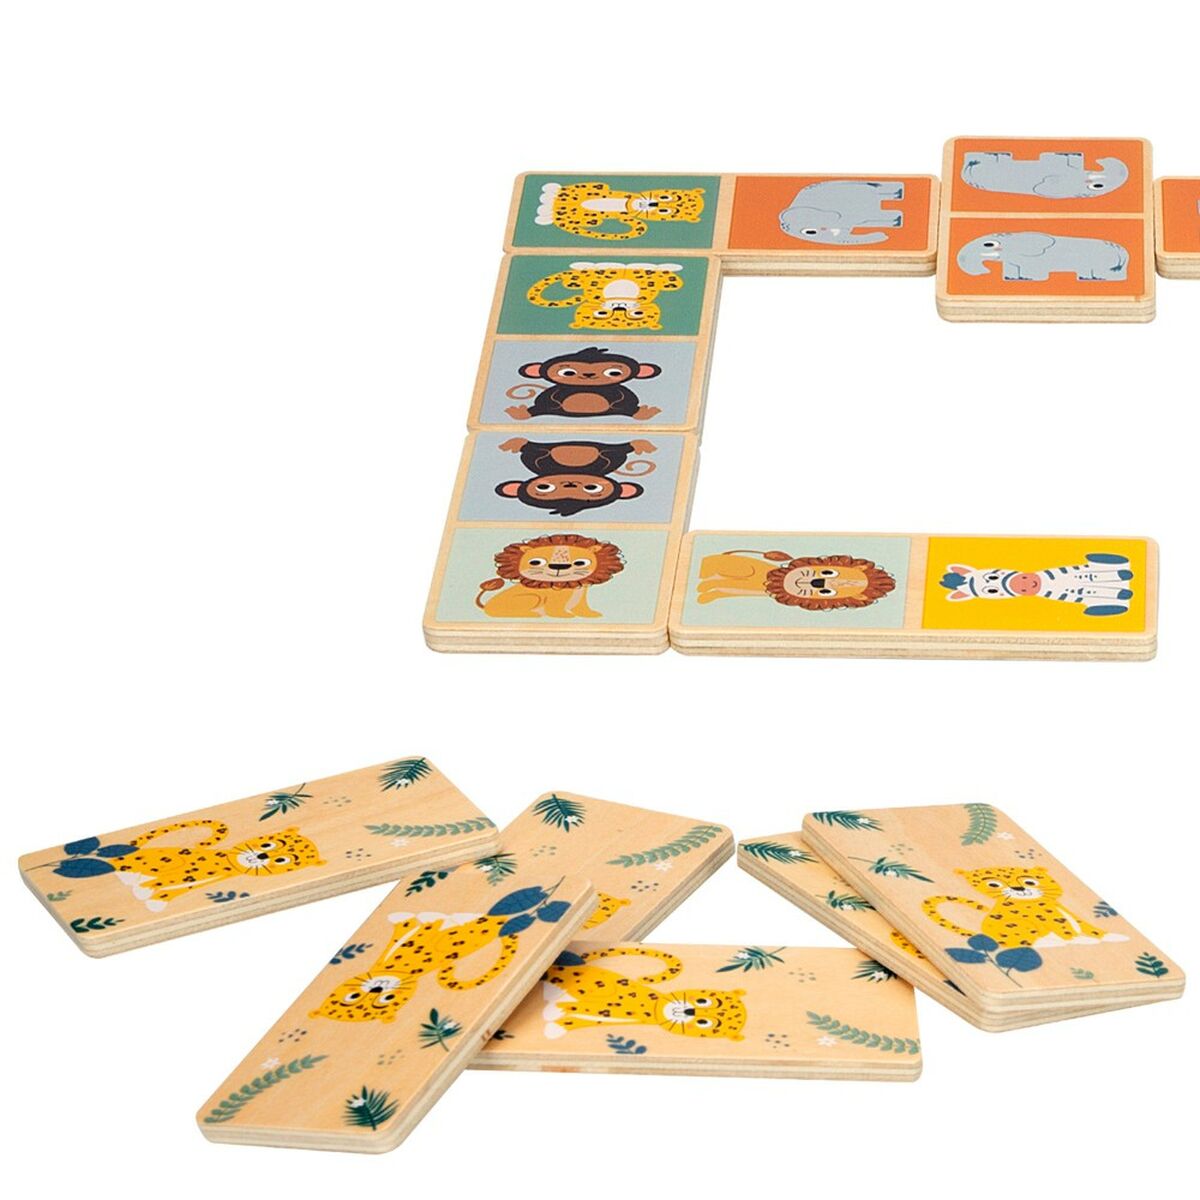 Skicklighetsspel Woomax djur (12 antal)-Leksaker och spel, Spel och tillbehör-Woomax-peaceofhome.se